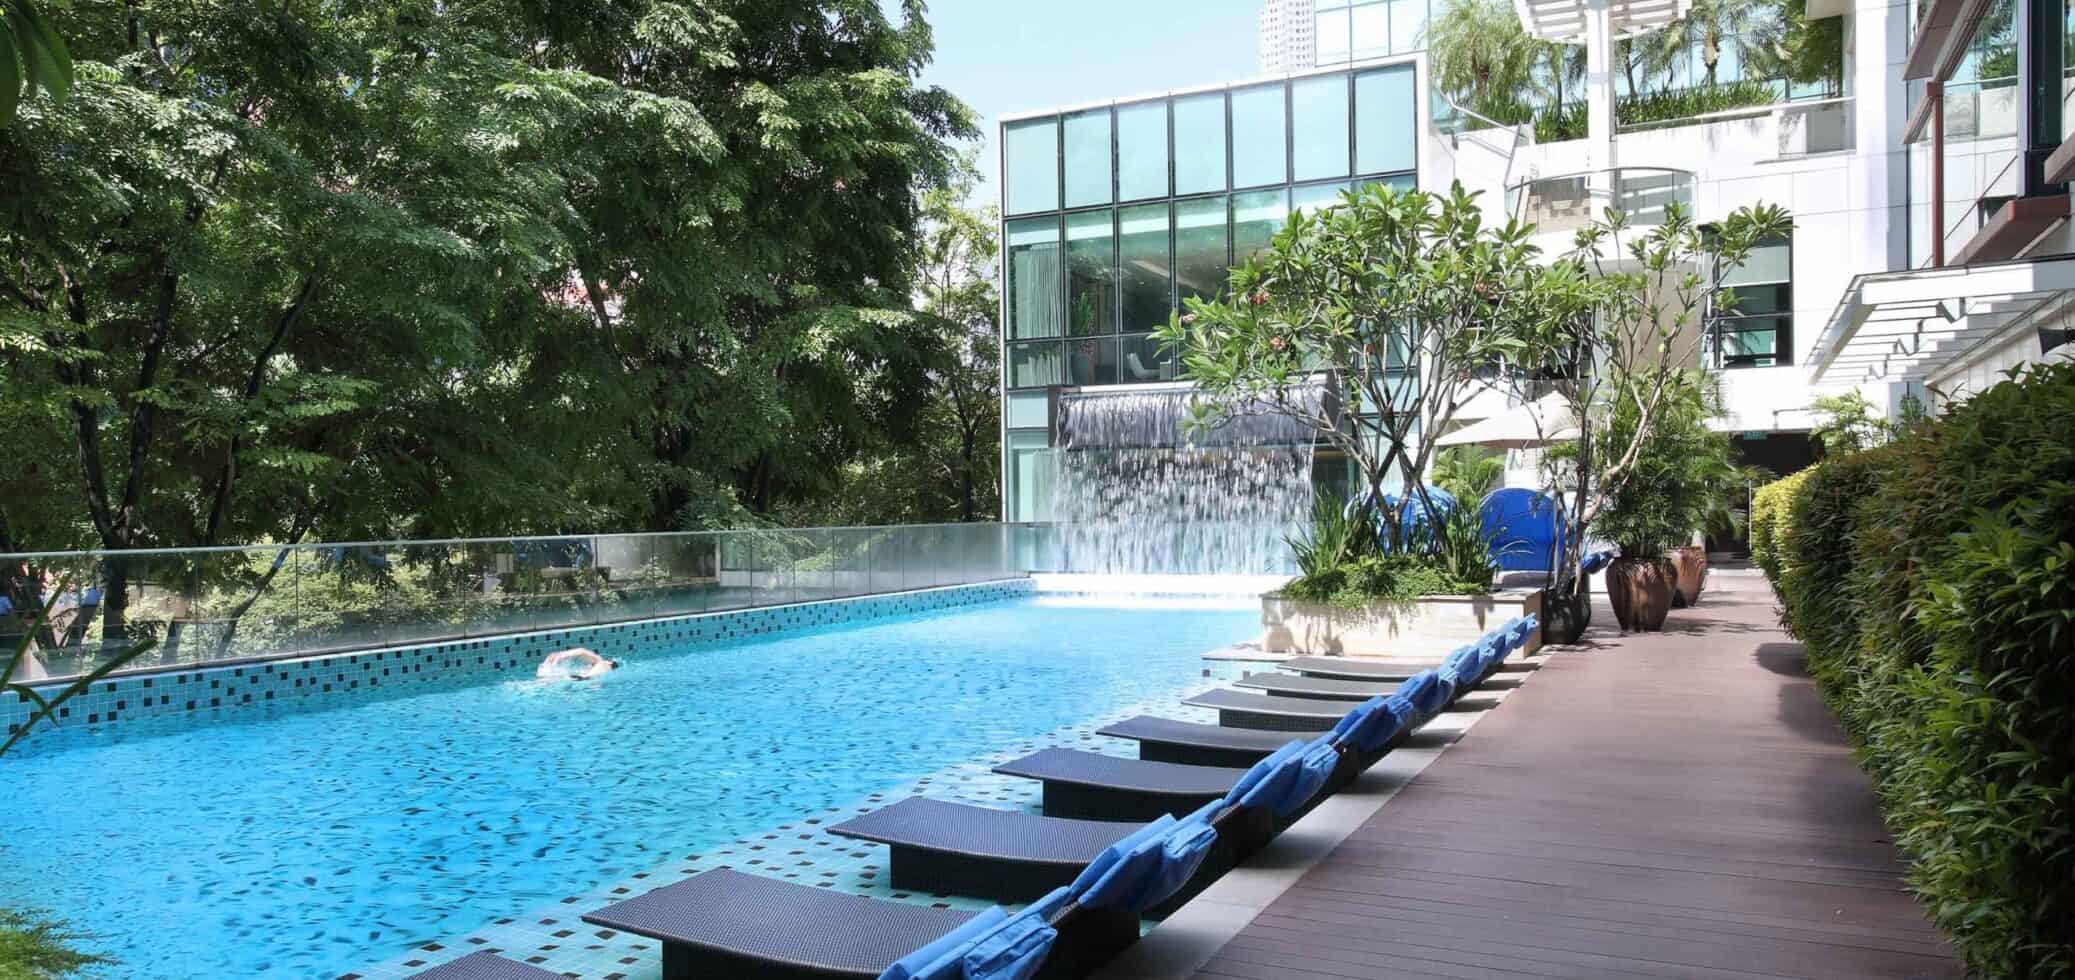 Swimming Pool Park Regis Singapore